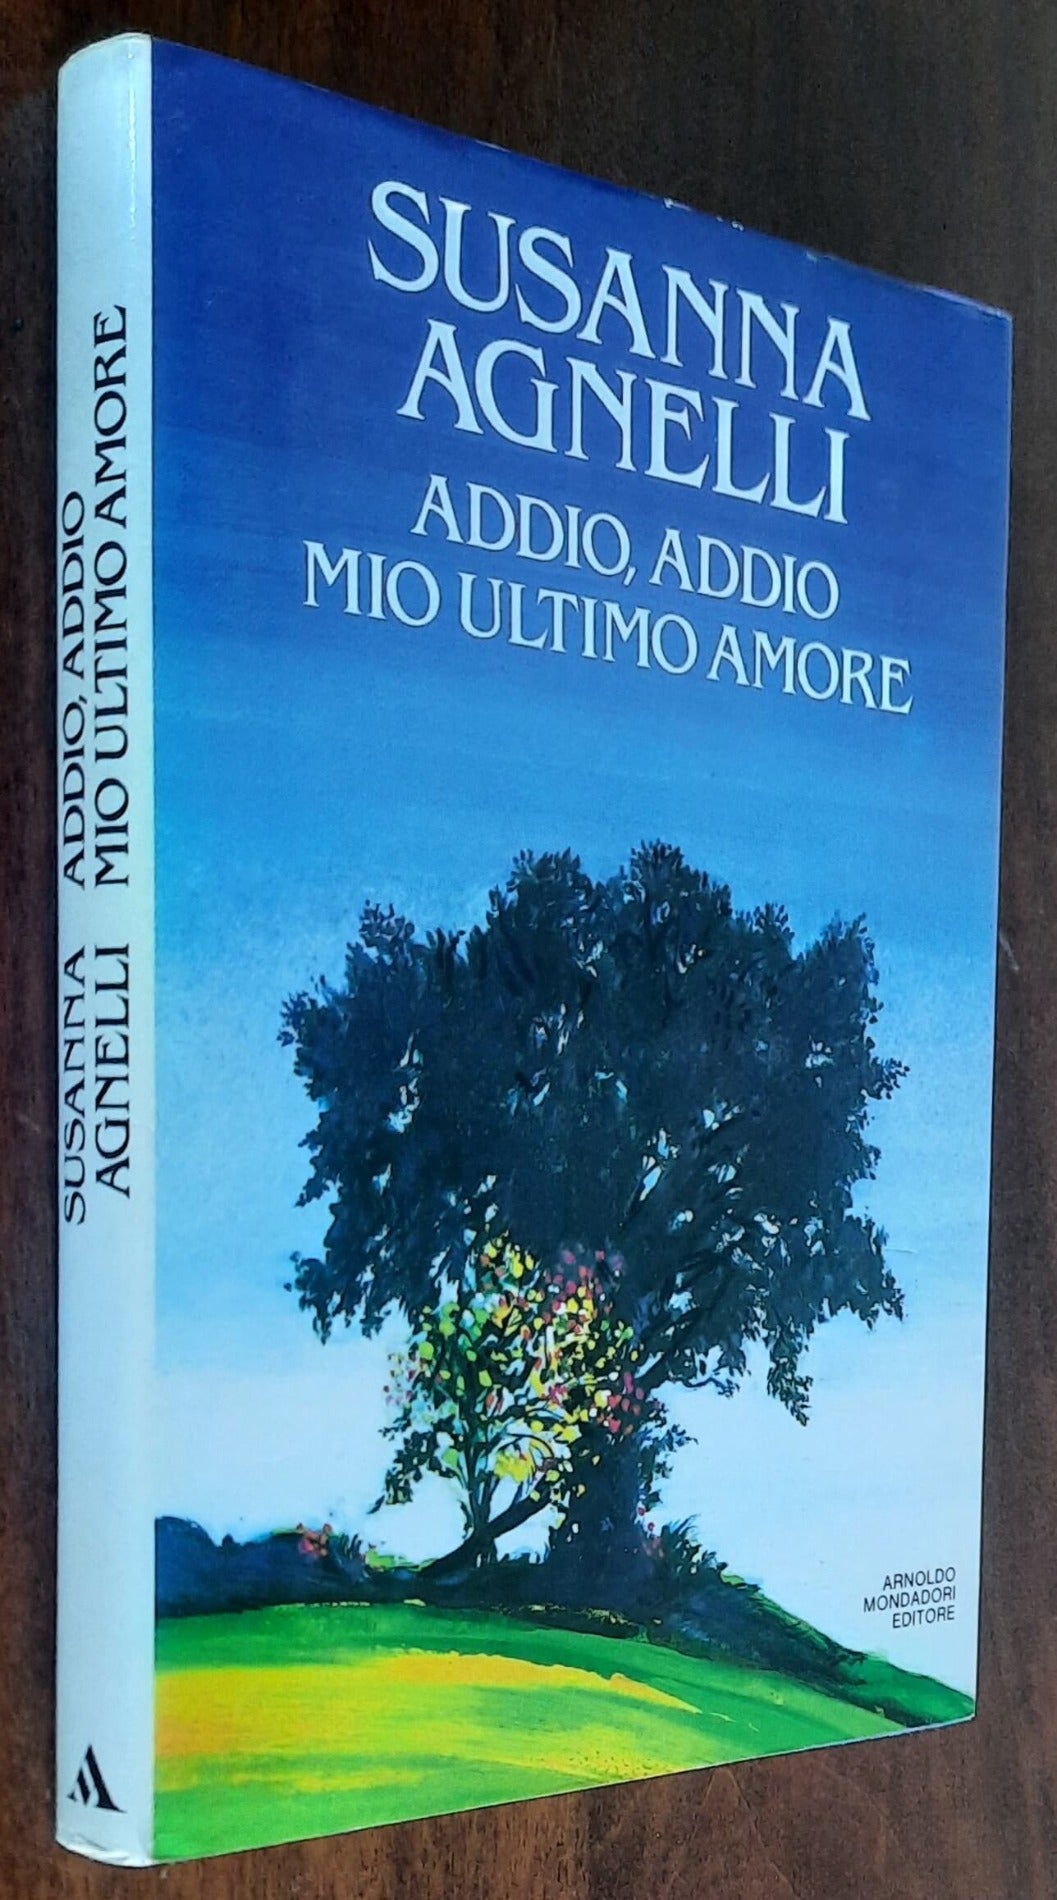 Addio, addio mio ultimo amore - di Susanna Agnelli - Mondadori